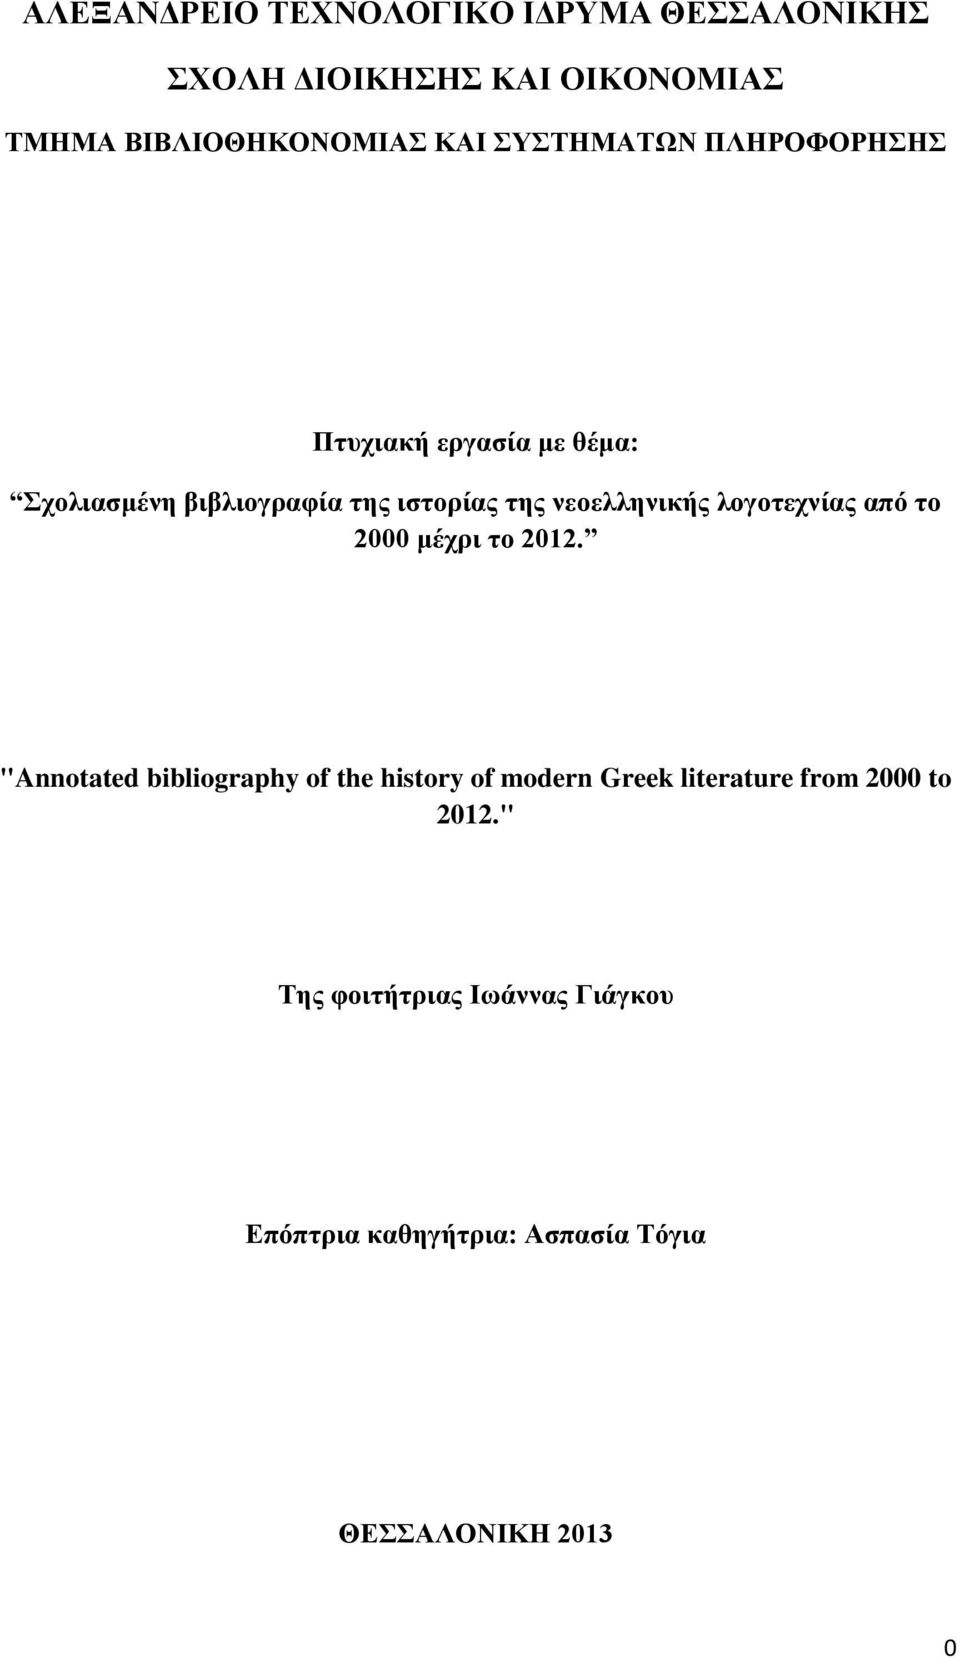 νεοελληνικής λογοτεχνίας από το 2000 μέχρι το 2012.